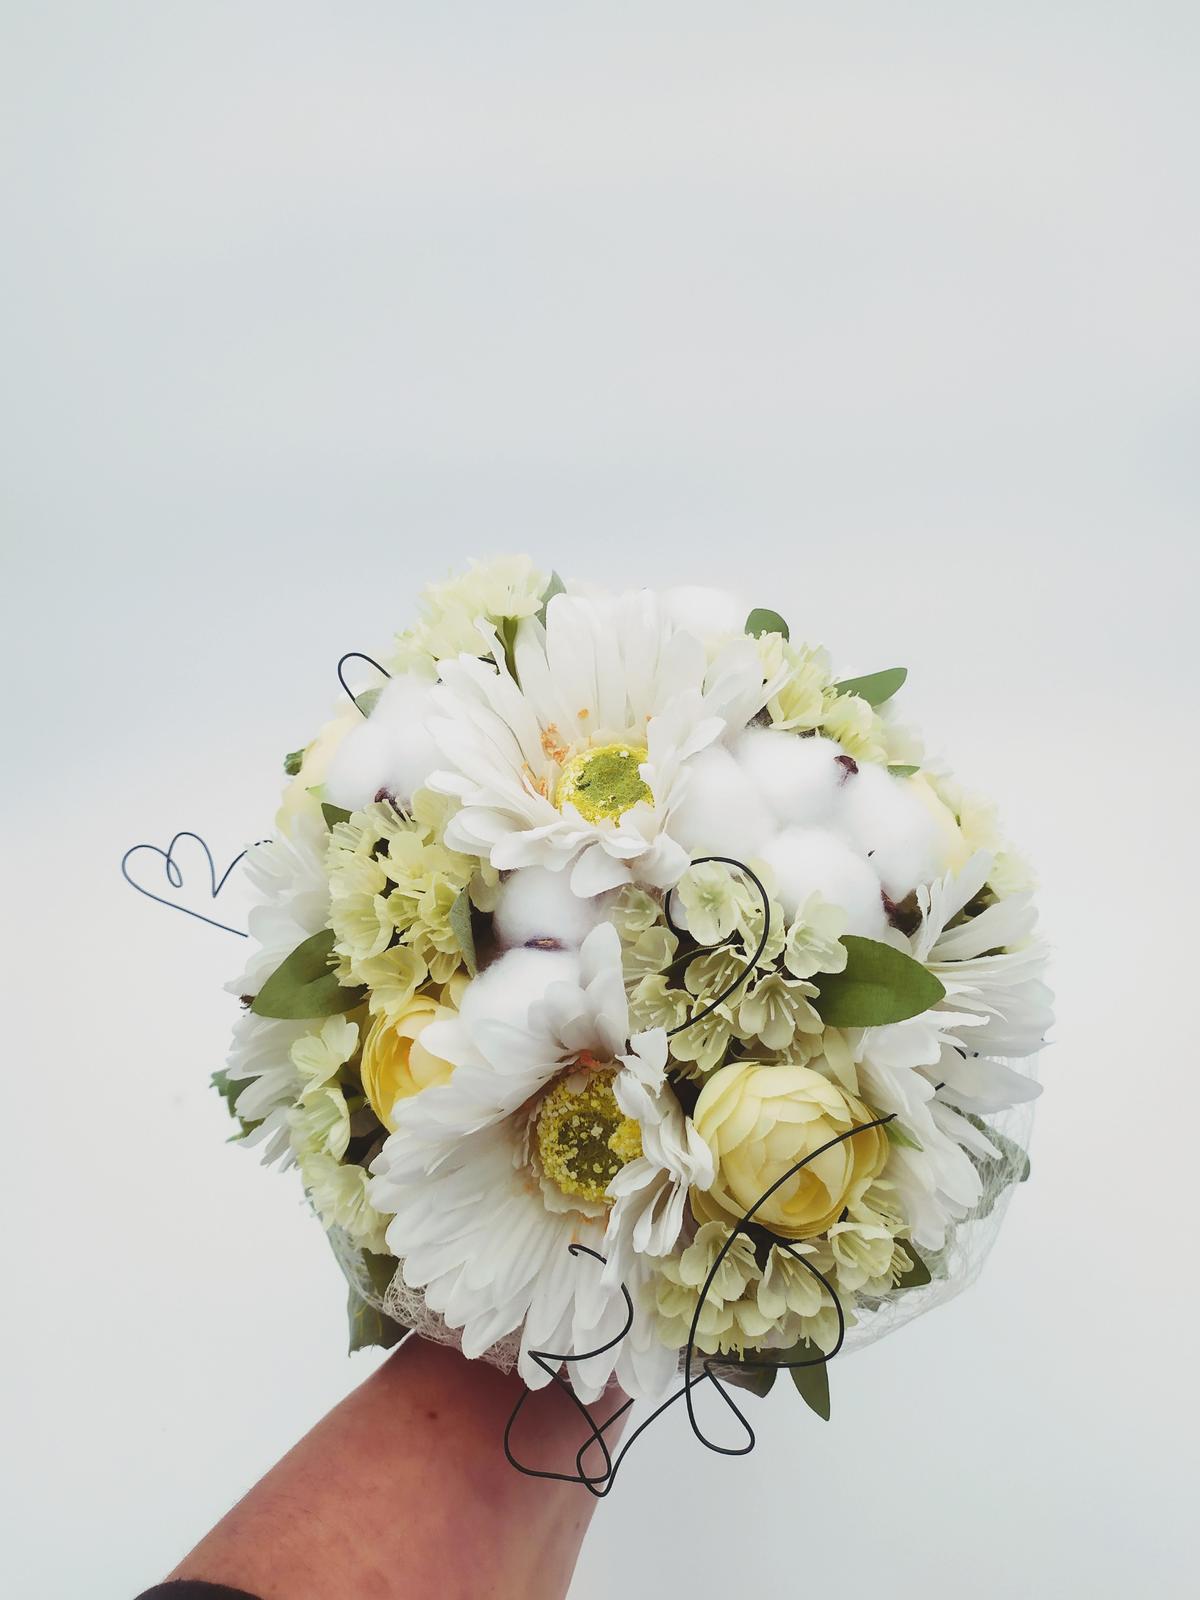 Svatebnì kytice pro nevěstu( gerbery,bavlnìk,pryskyřnìk,hortenzie)) - Obrázek č. 1